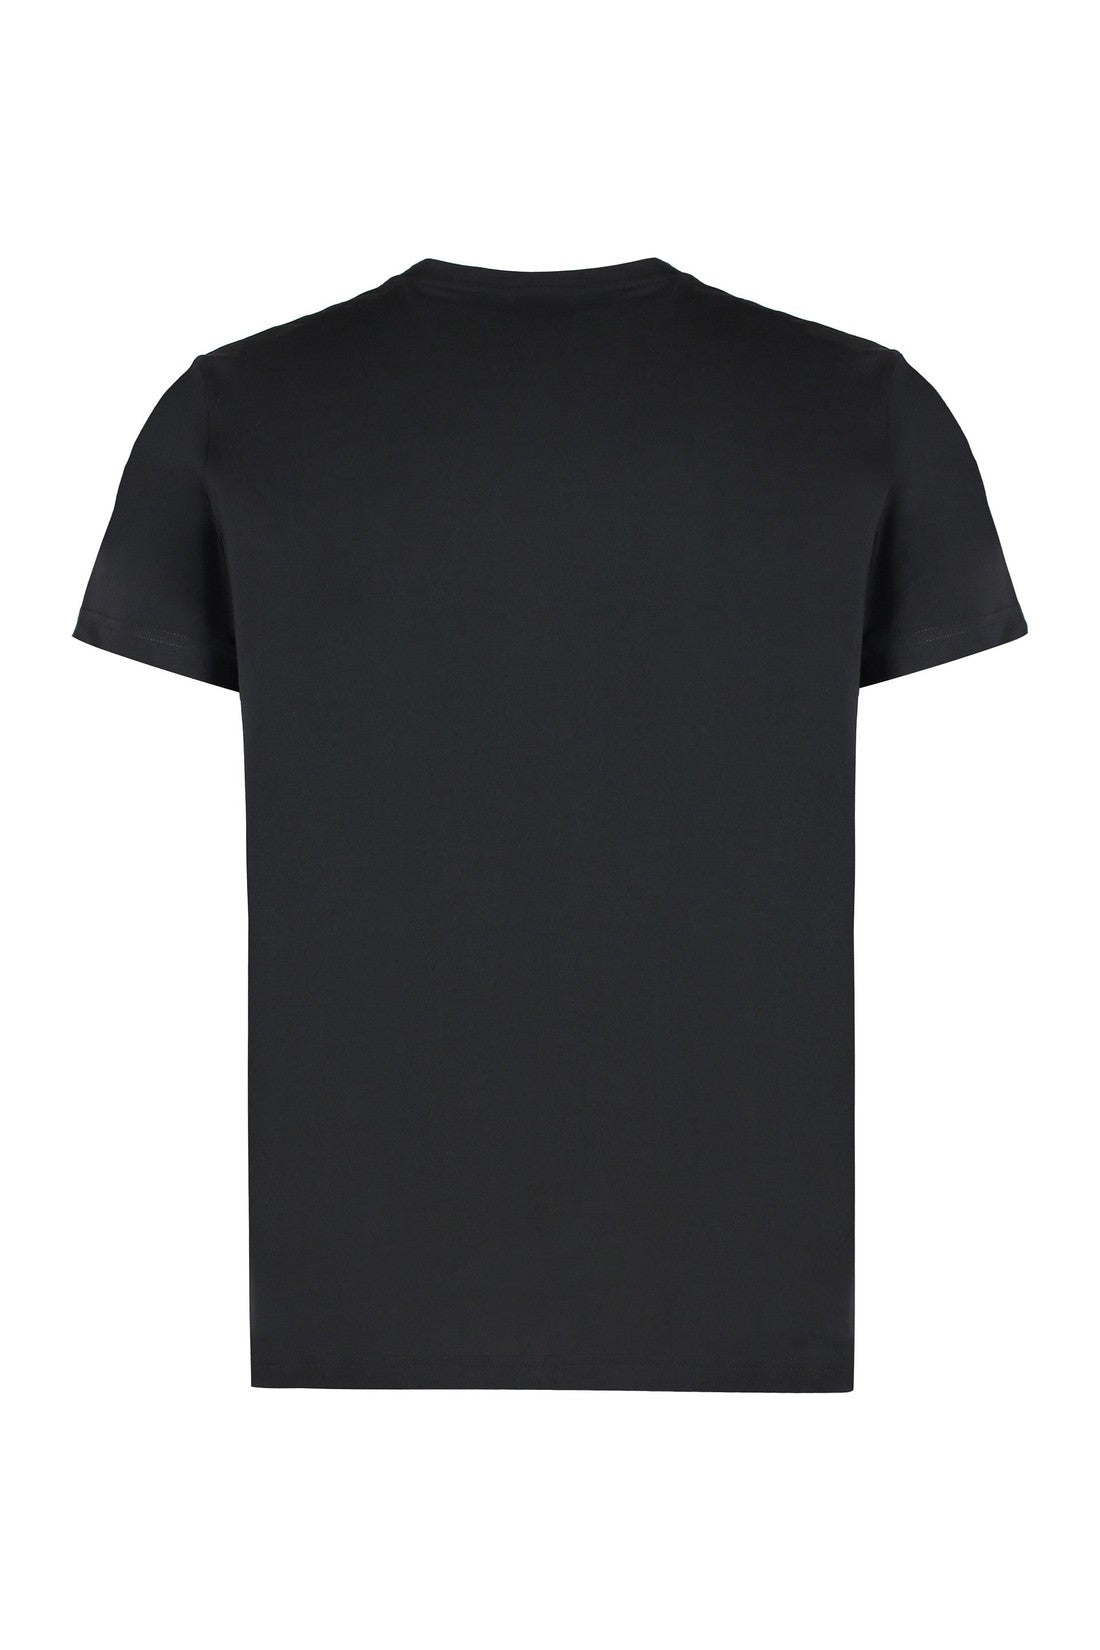 K-Way-OUTLET-SALE-Le Vrai Edouard cotton crew-neck T-shirt-ARCHIVIST